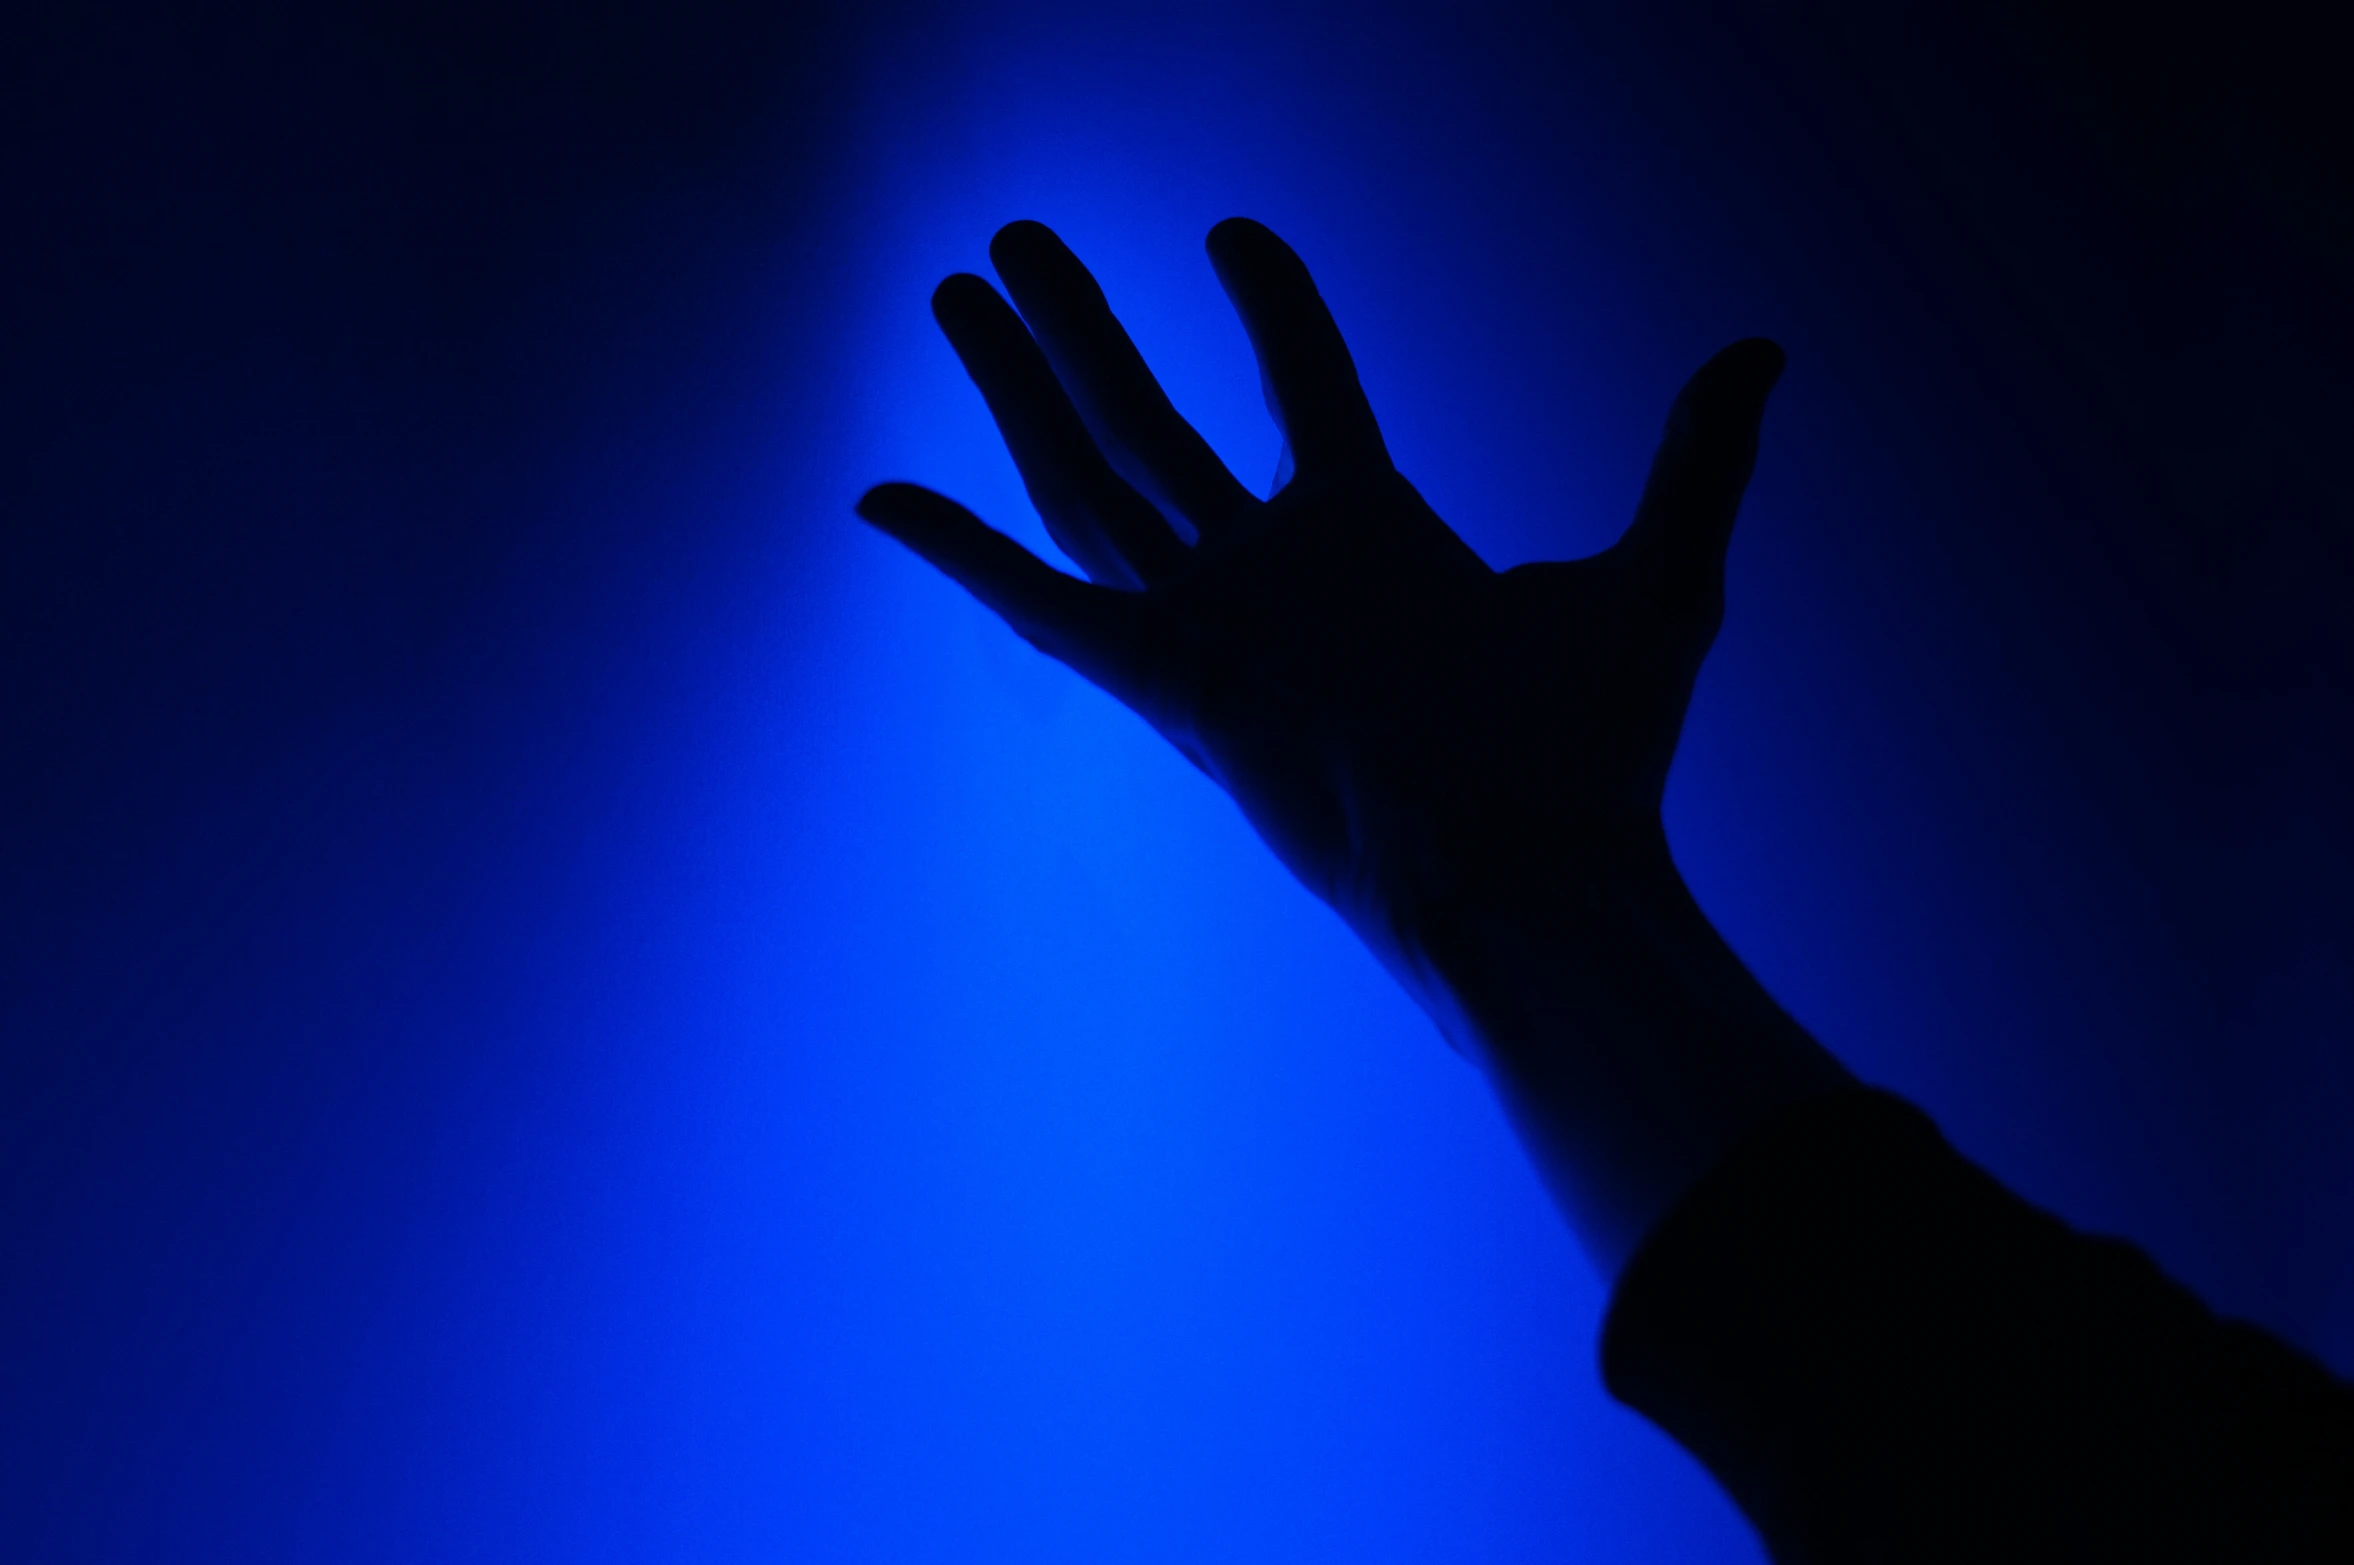 a hand reaching out towards a dark blue light